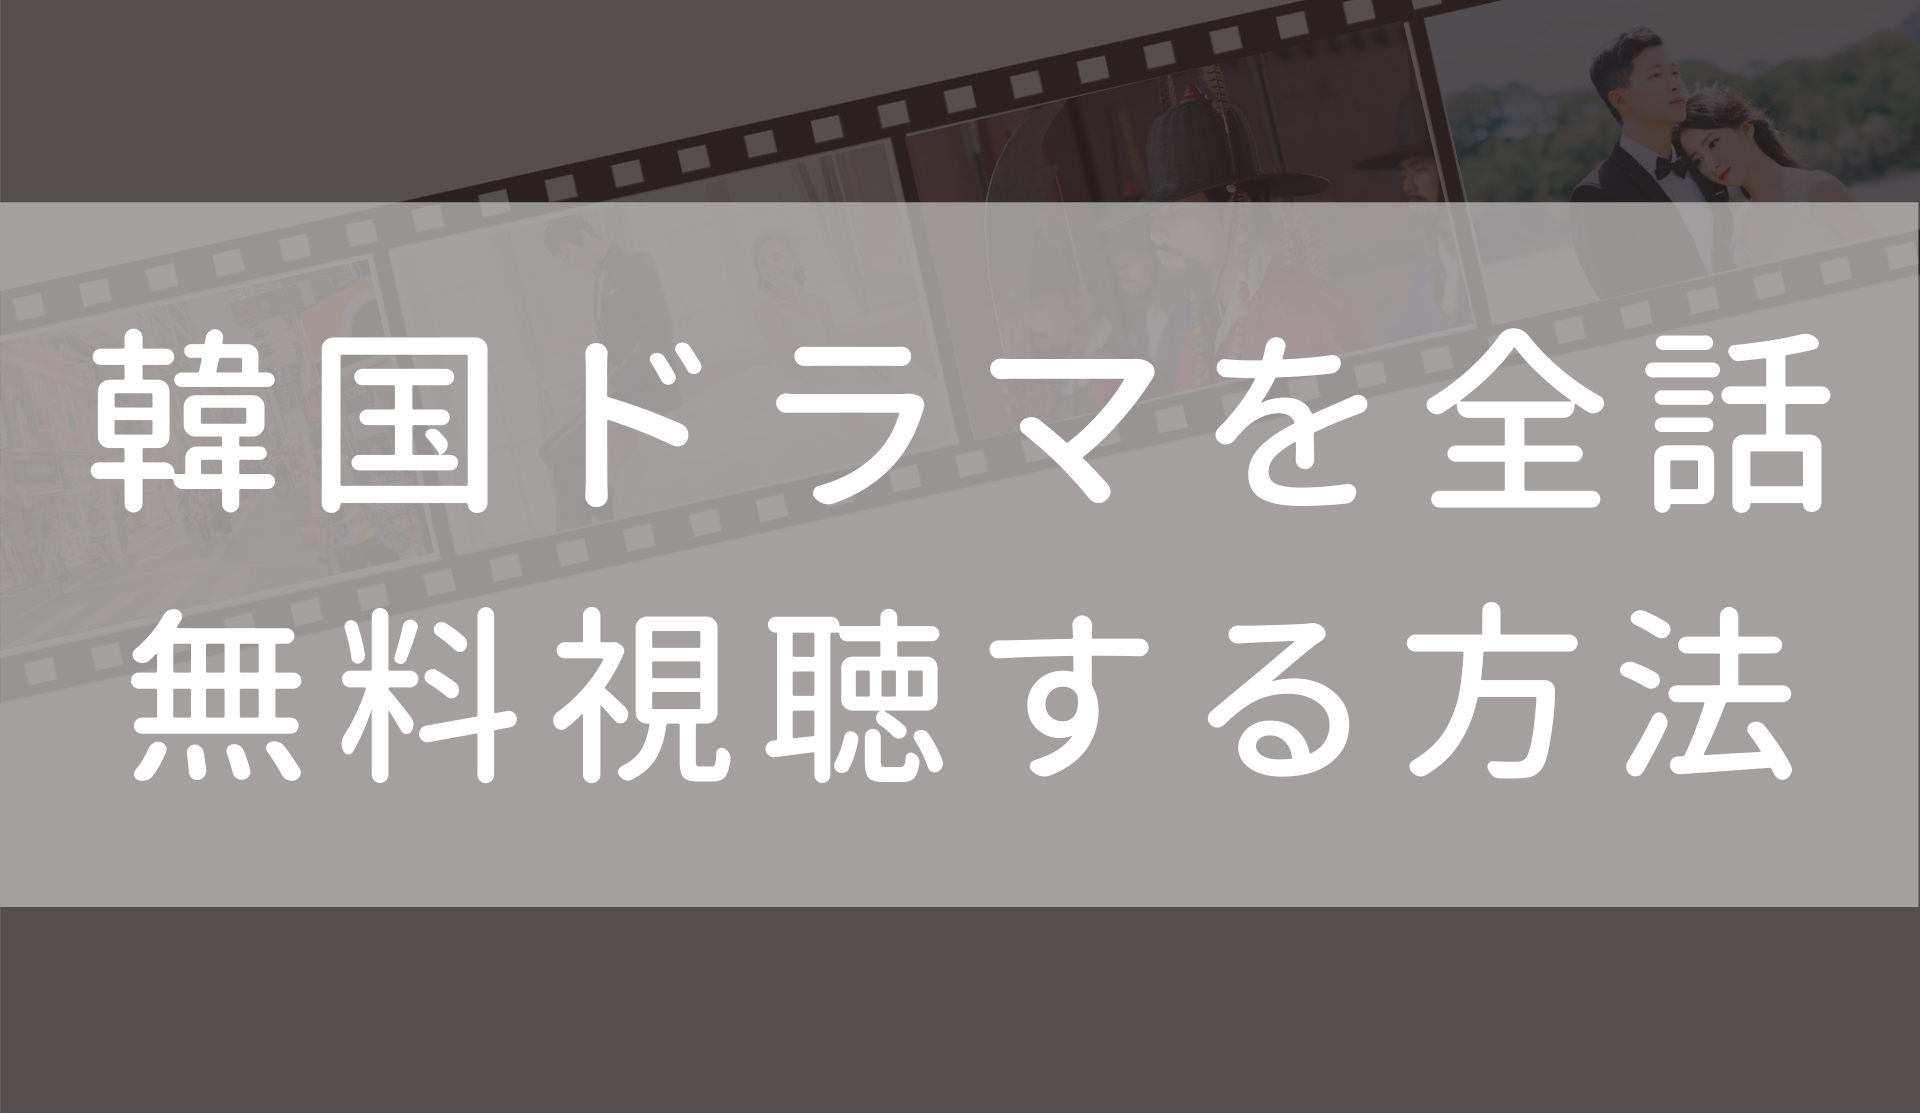 ドリームハイ 日本語字幕 吹き替え の無料動画 1話 最終回まで全話観る方法も Fuku Hack Times